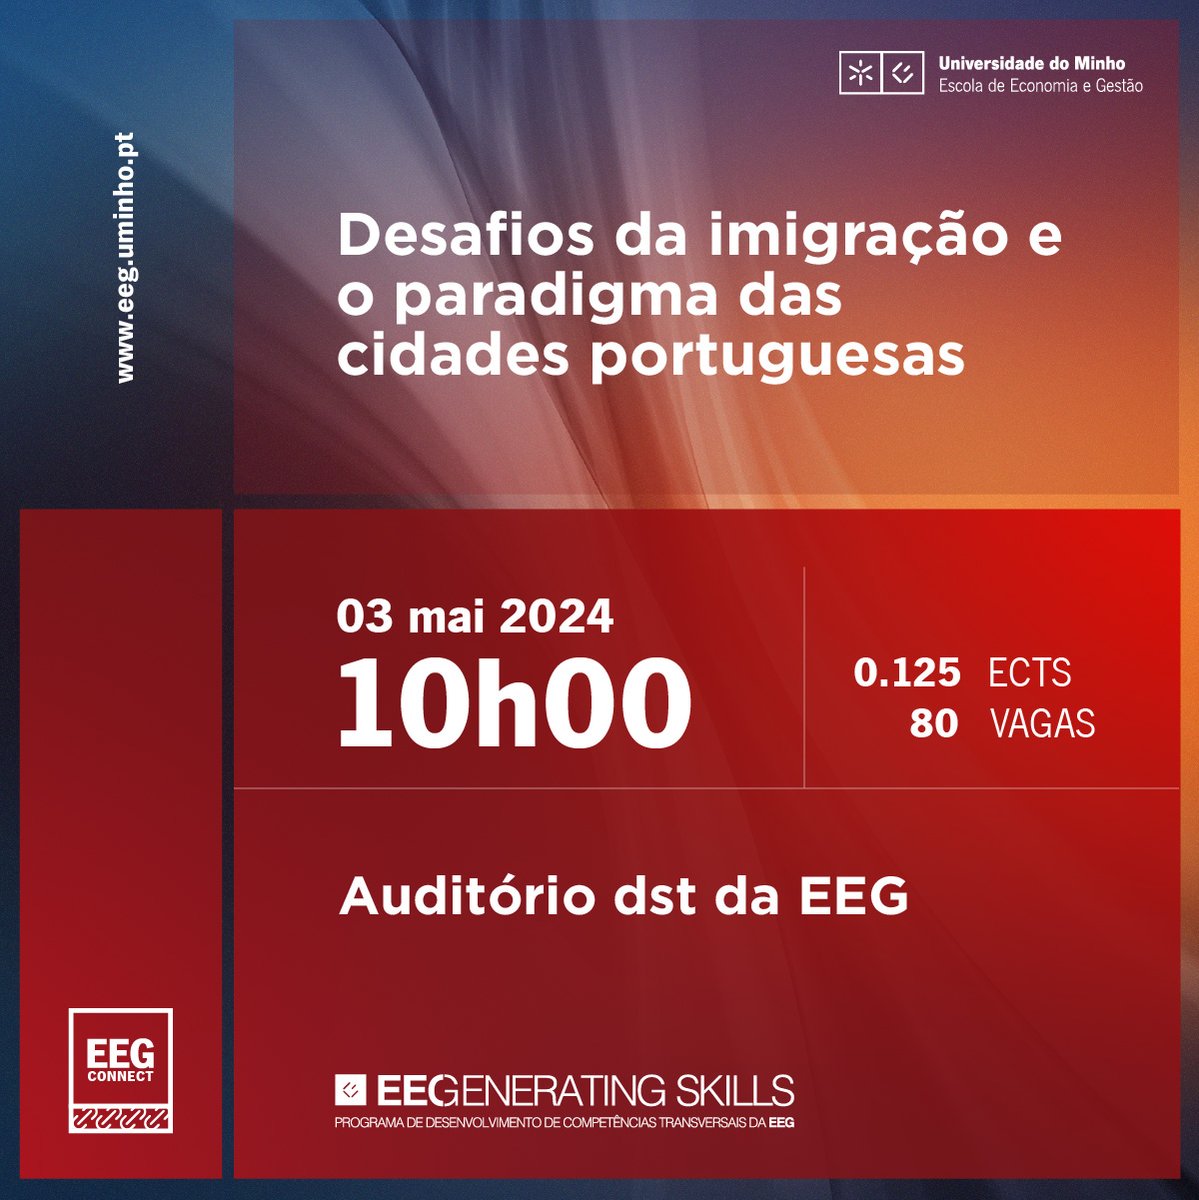 🌍 EEGCONNECT | DESAFIOS DA IMIGRAÇÃO E O PARADIGMA DAS CIDADES PORTUGUESAS 🏙️ ✍️ Inscrições abertas até 30 de abril de 2024! Não perca a oportunidade de participar neste debate vital. ver + shorturl.at/cdrC5 #SomosEEG #EEG #EEGConnect #Imigração #EconomiaSocial